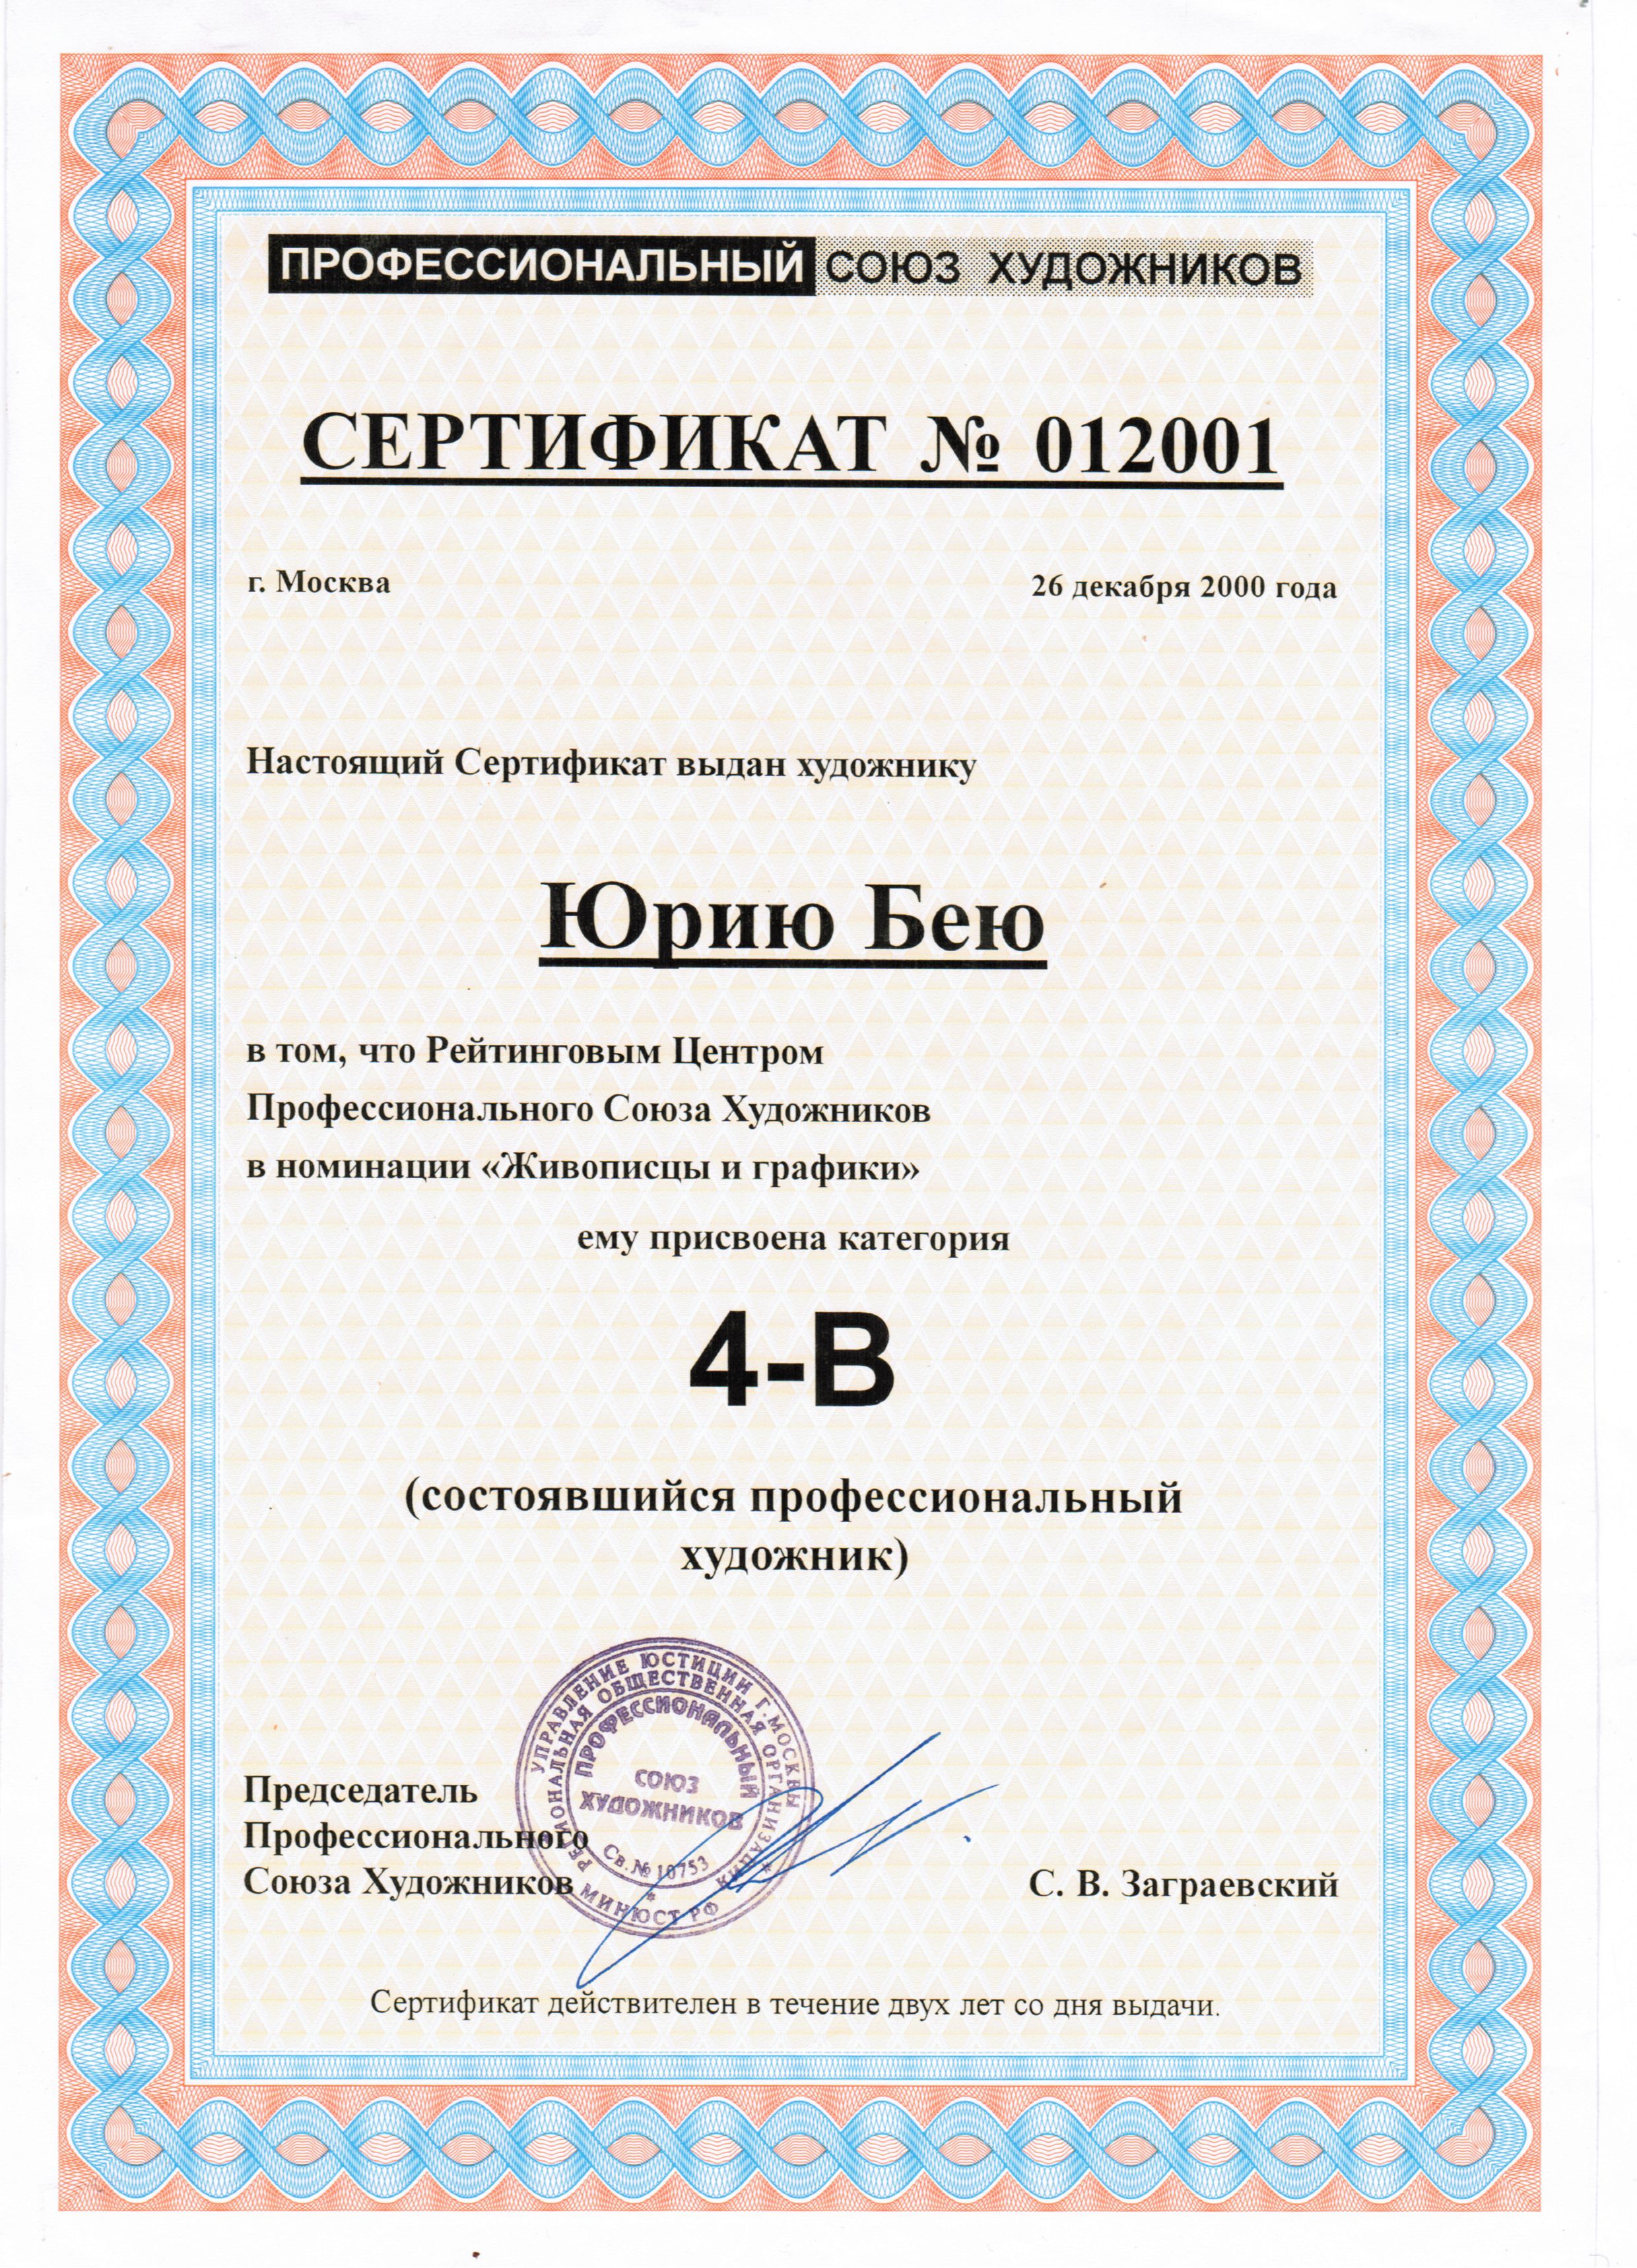 Сертификат Профессионального Художника